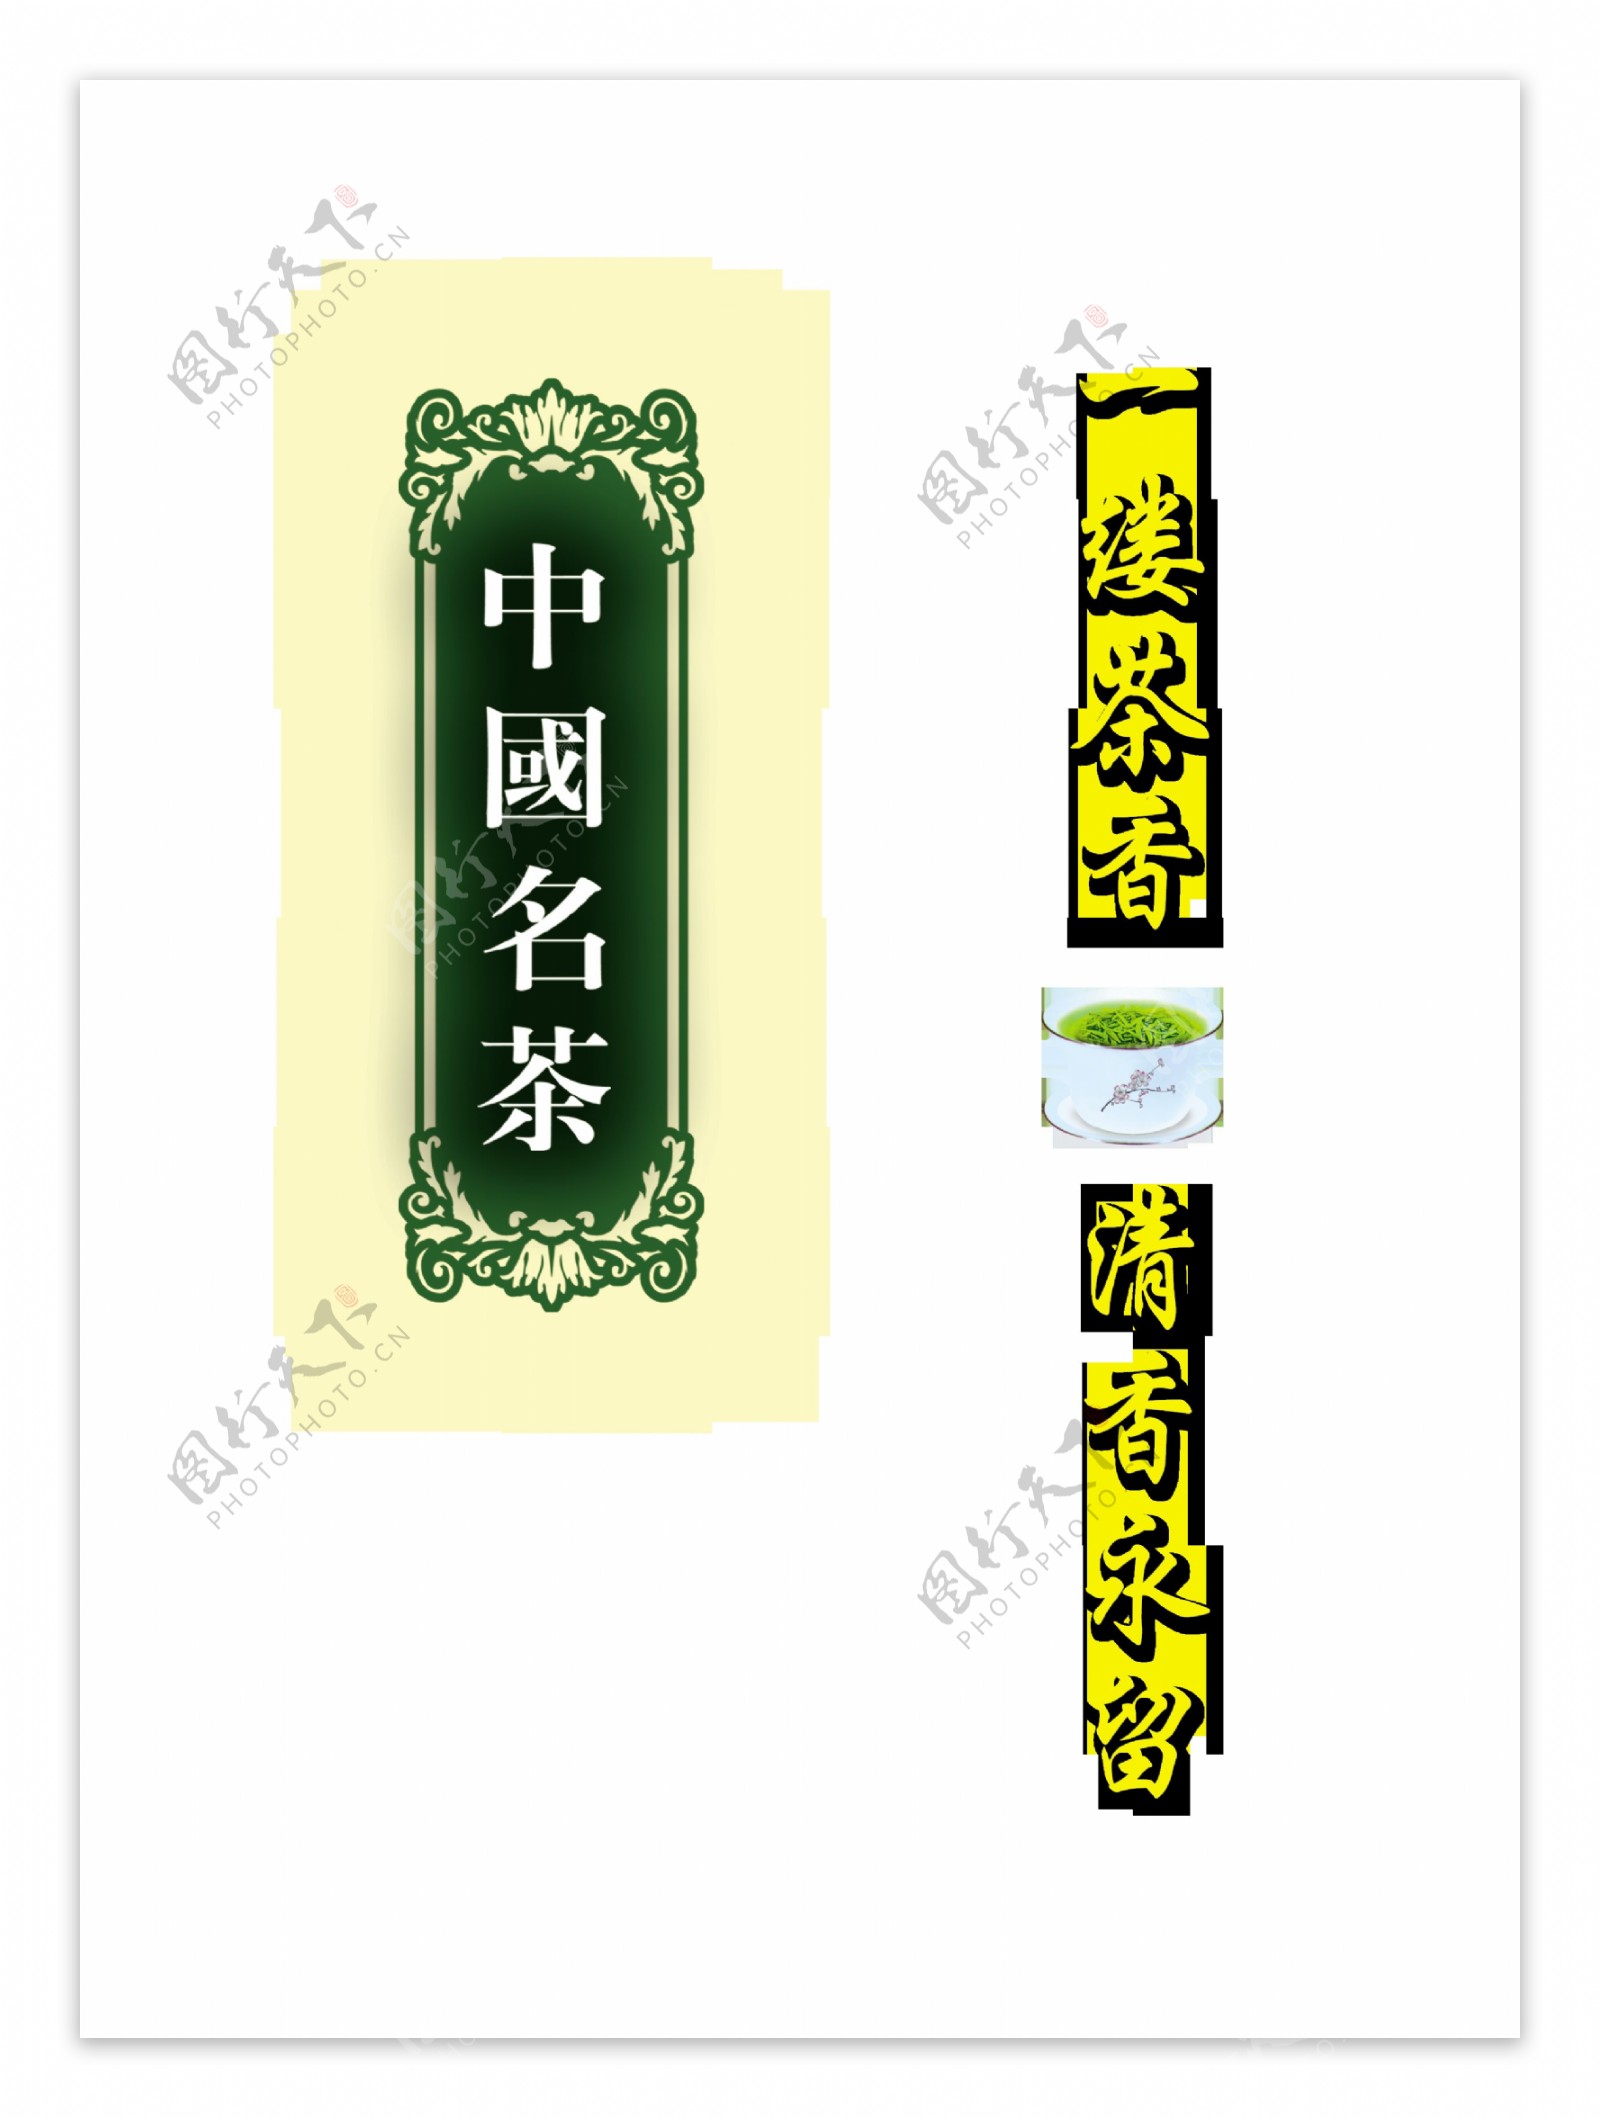 中国名茶一缕茶香艺术字